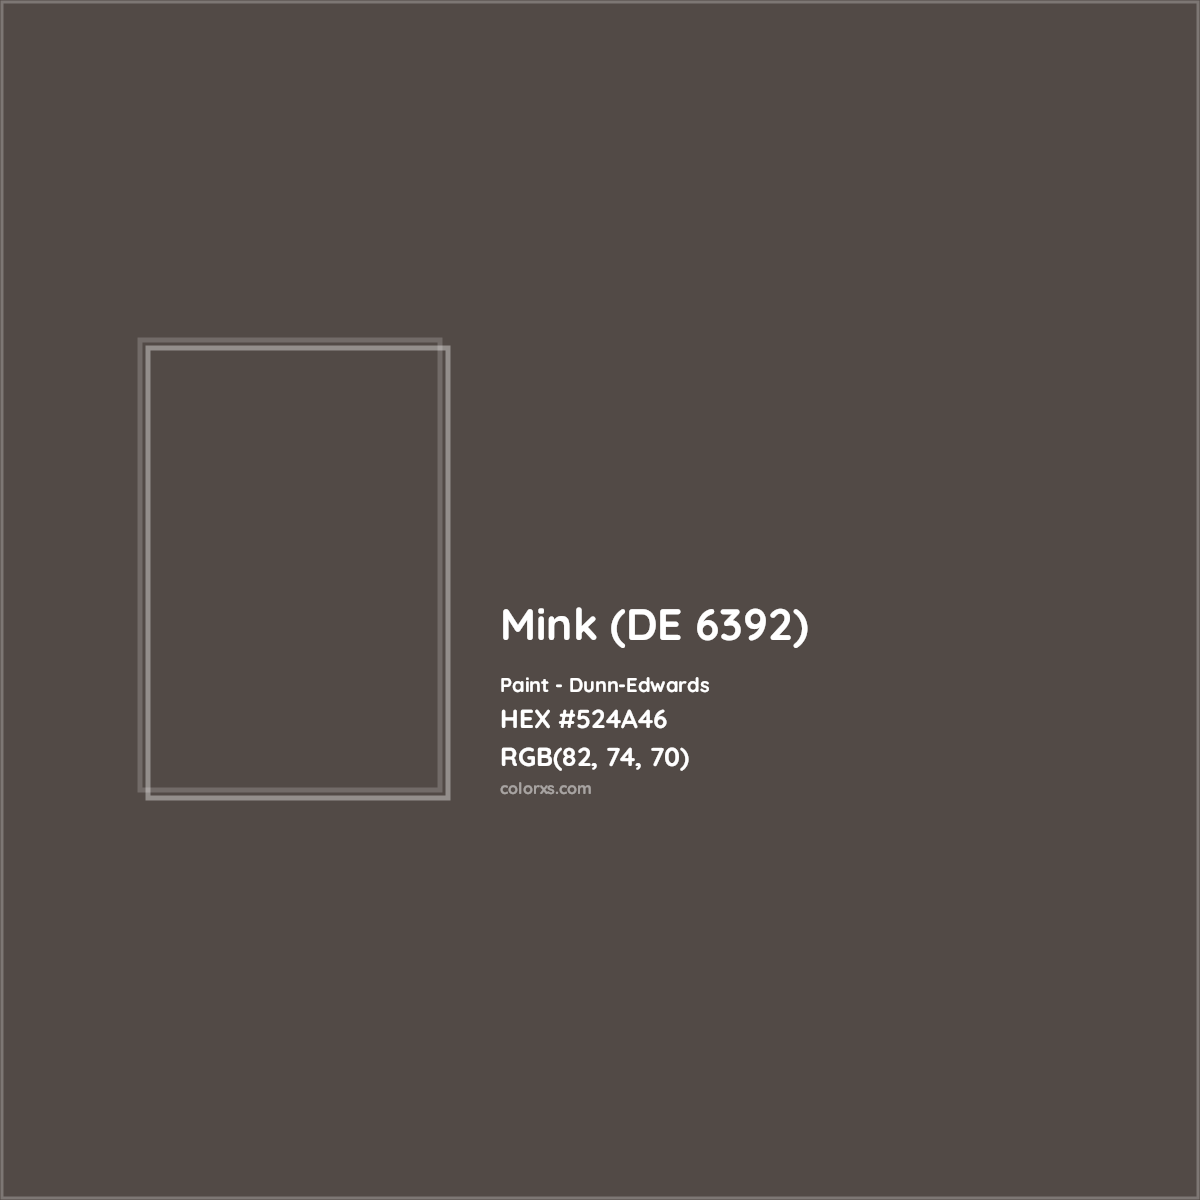 HEX #524A46 Mink (DE 6392) Paint Dunn-Edwards - Color Code